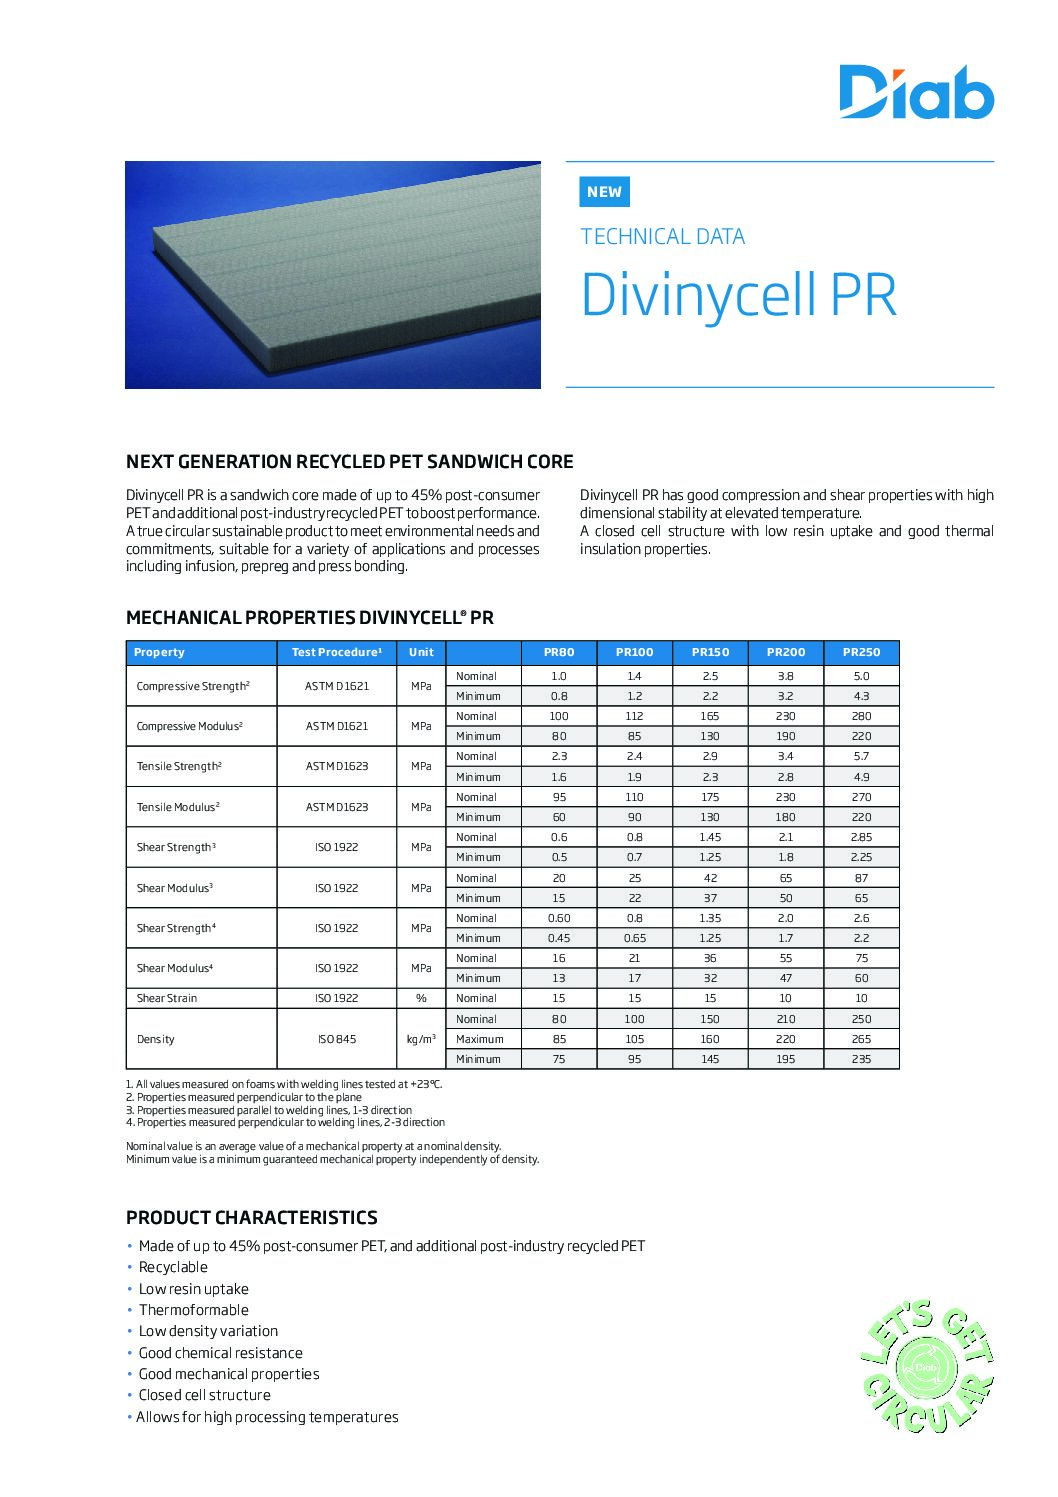 Technical Data: Divinycell PR